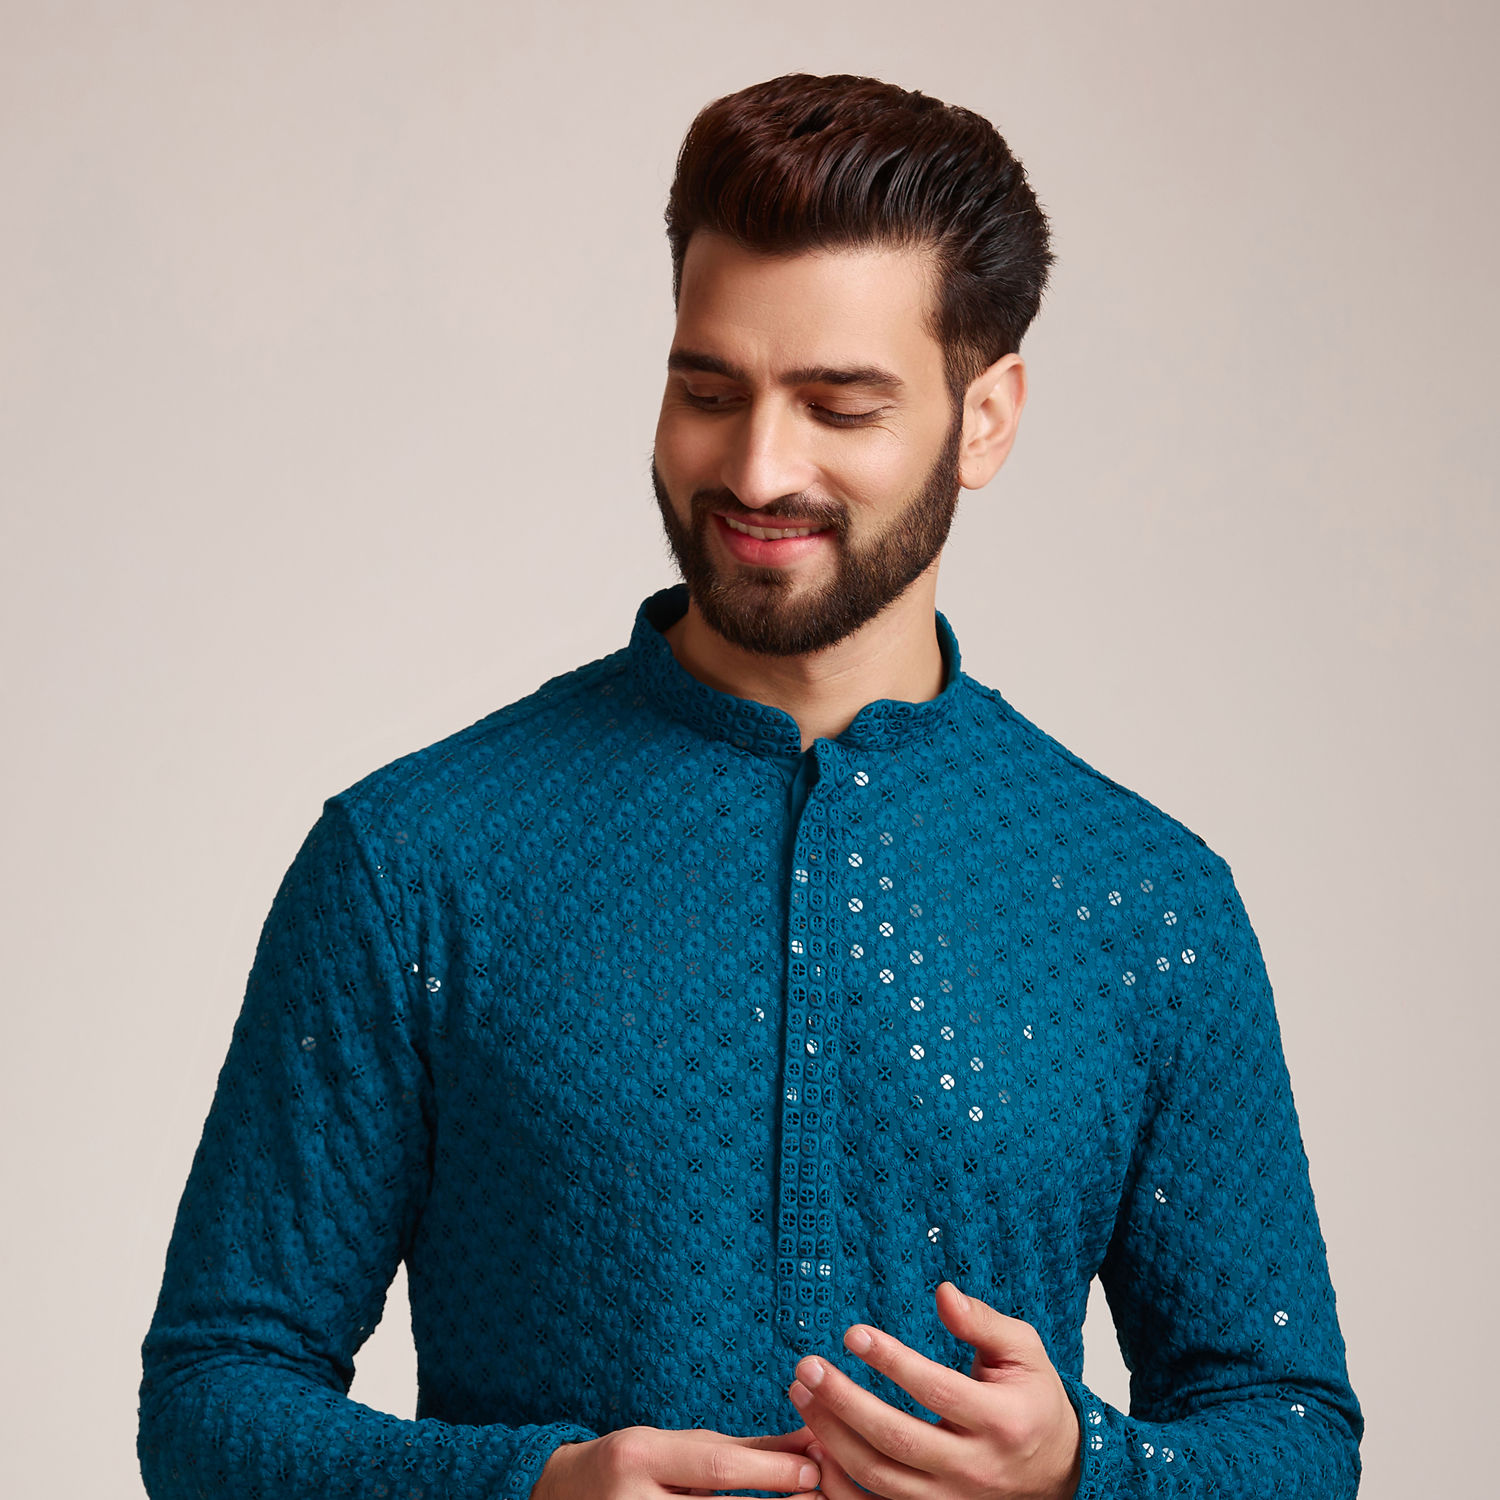 Buy Blue Sequin Embellished Jodhpuri Suit Online in the USA @Manyavar - Suit  Set for Men